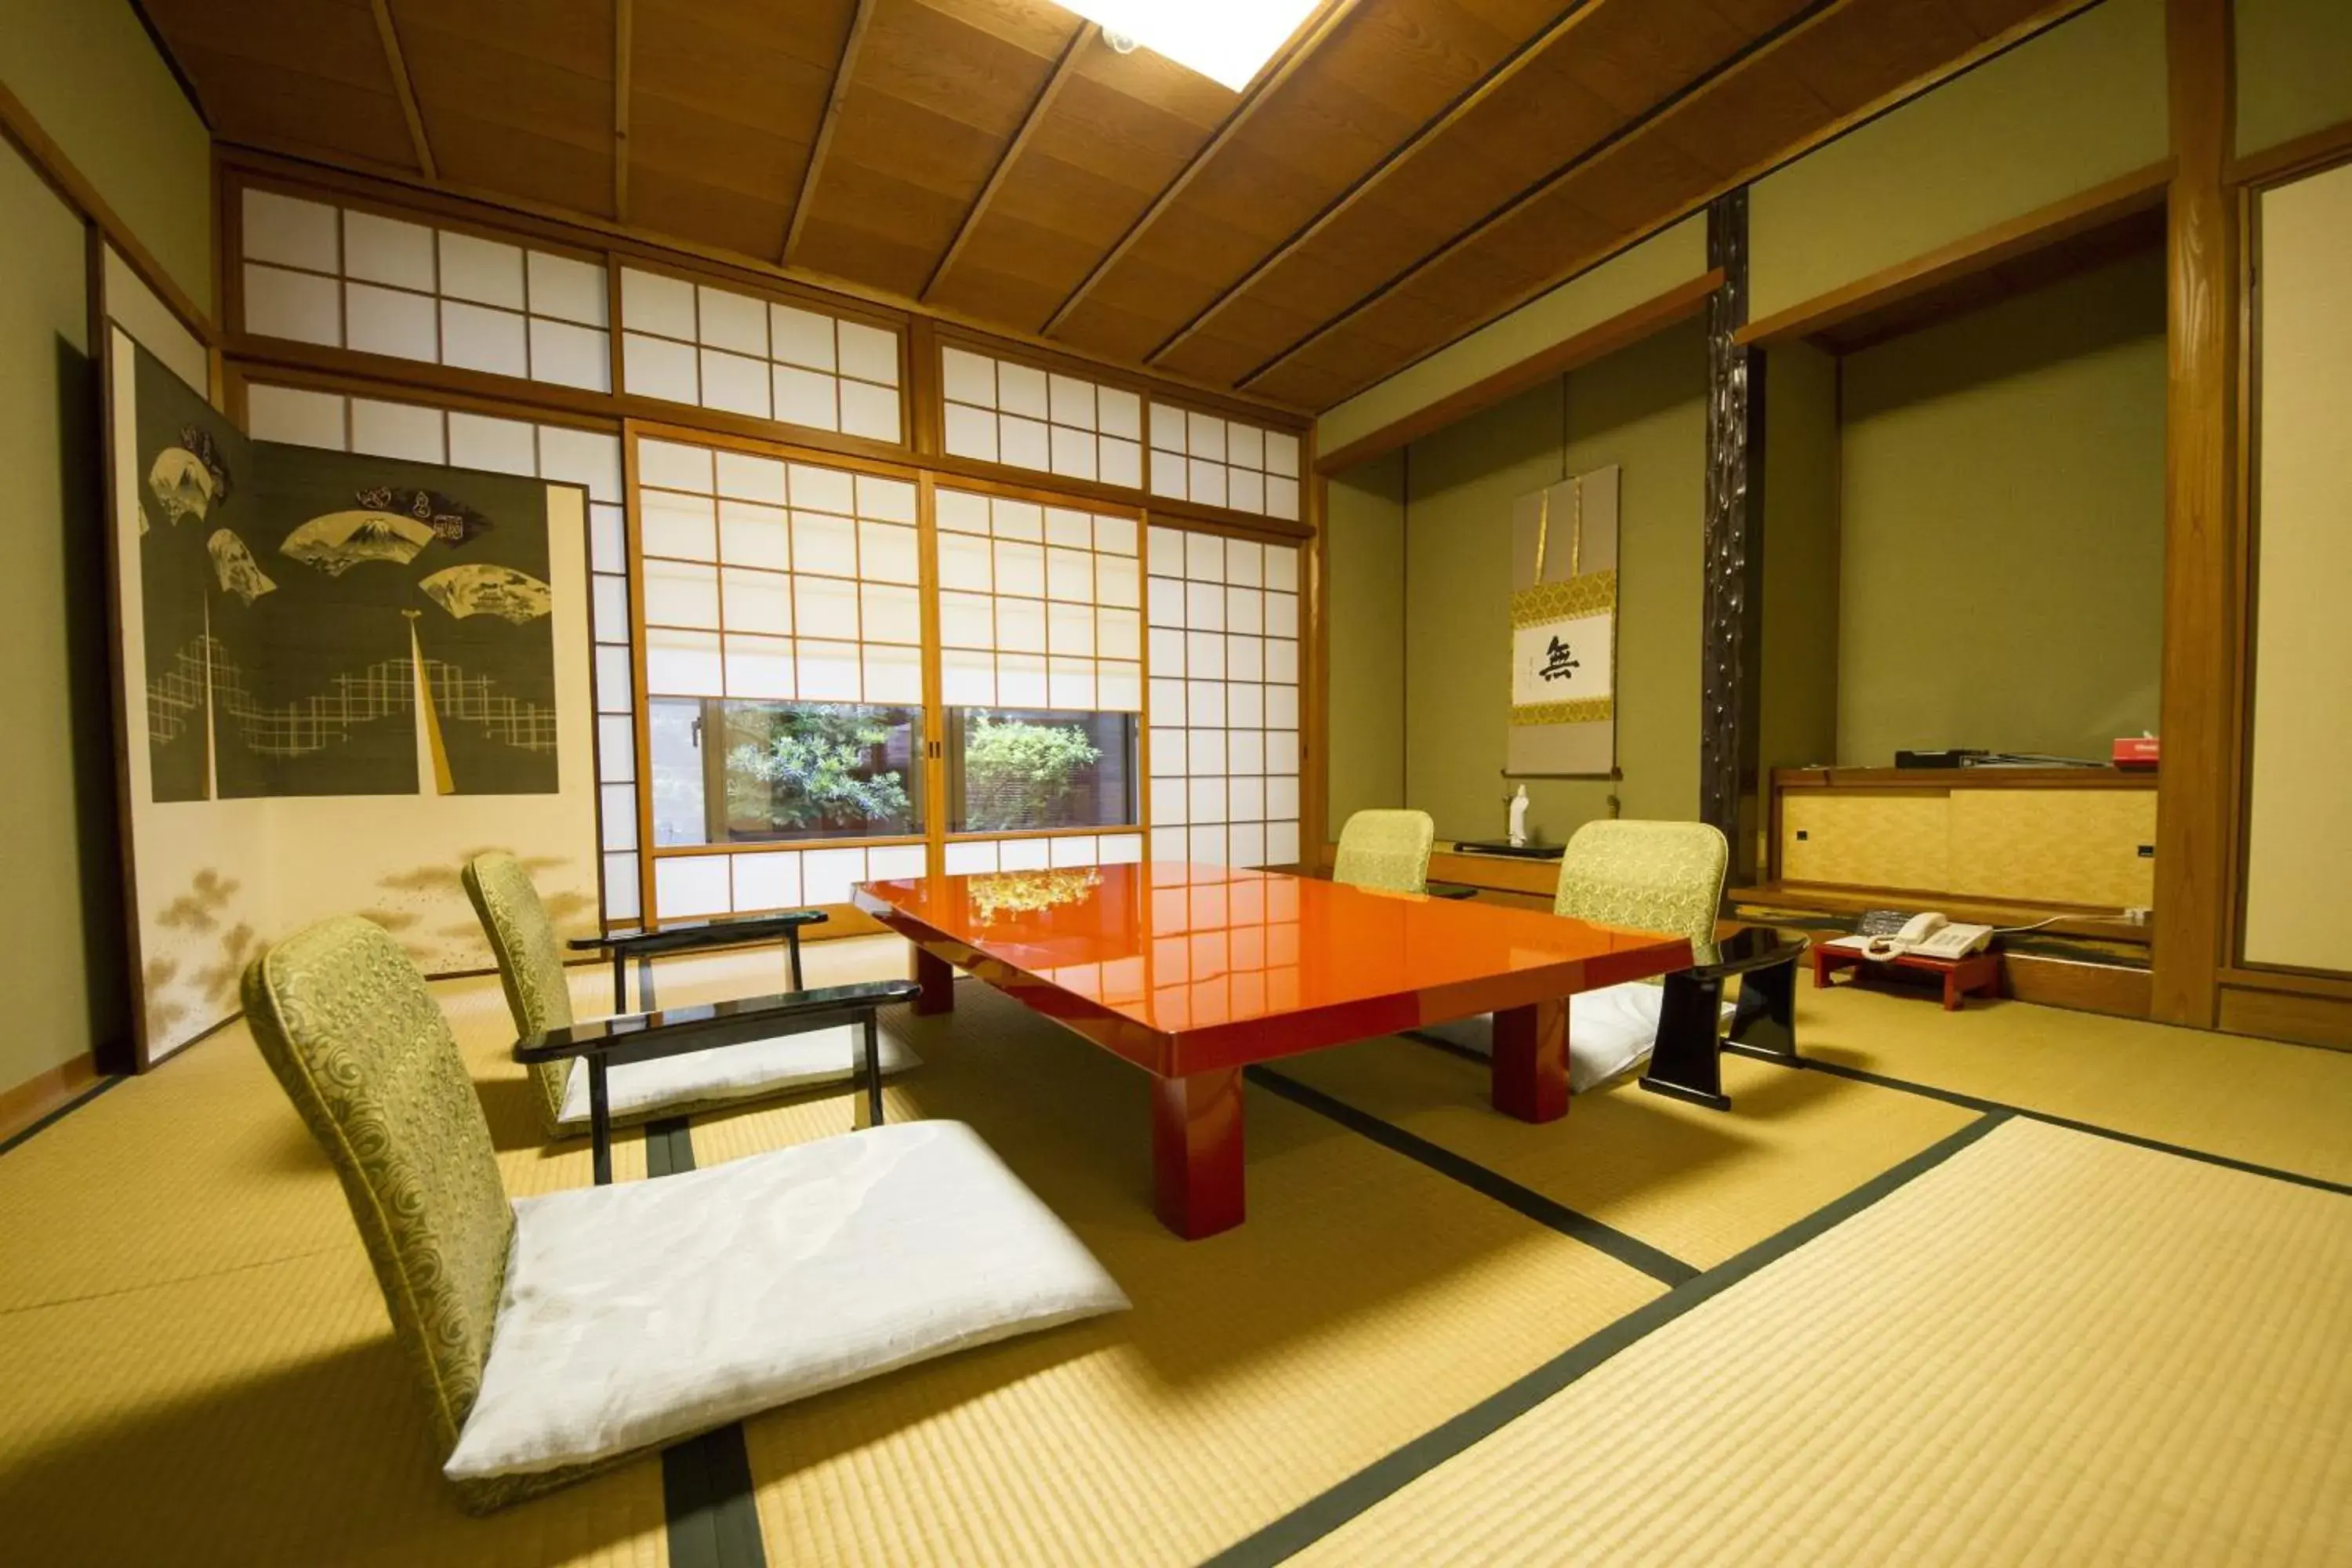 Photo of the whole room in Mikuniya Ryokan